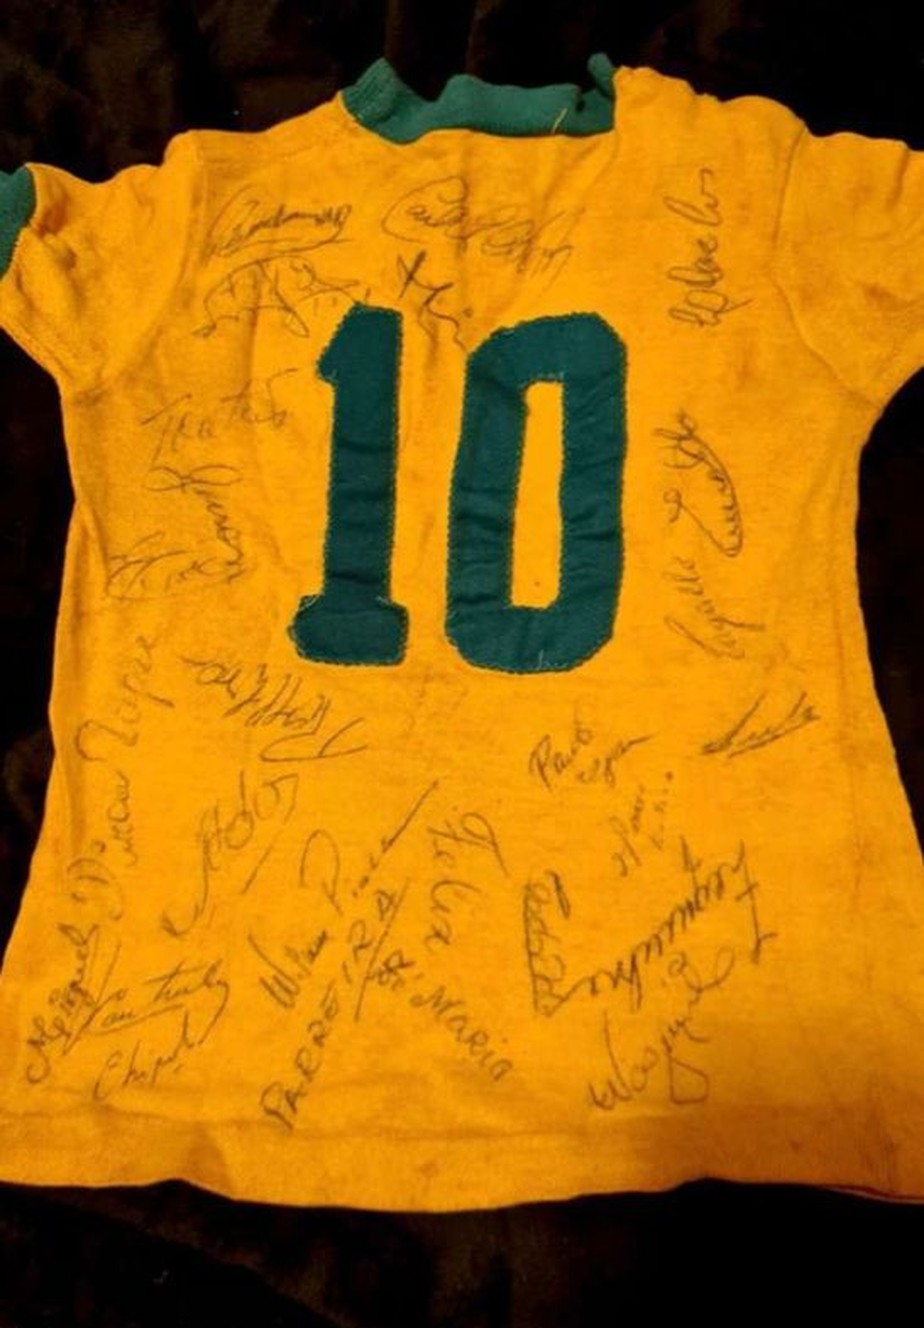 camisa seleção brasileira 1990 autografada por Dunga - Hall da Fama